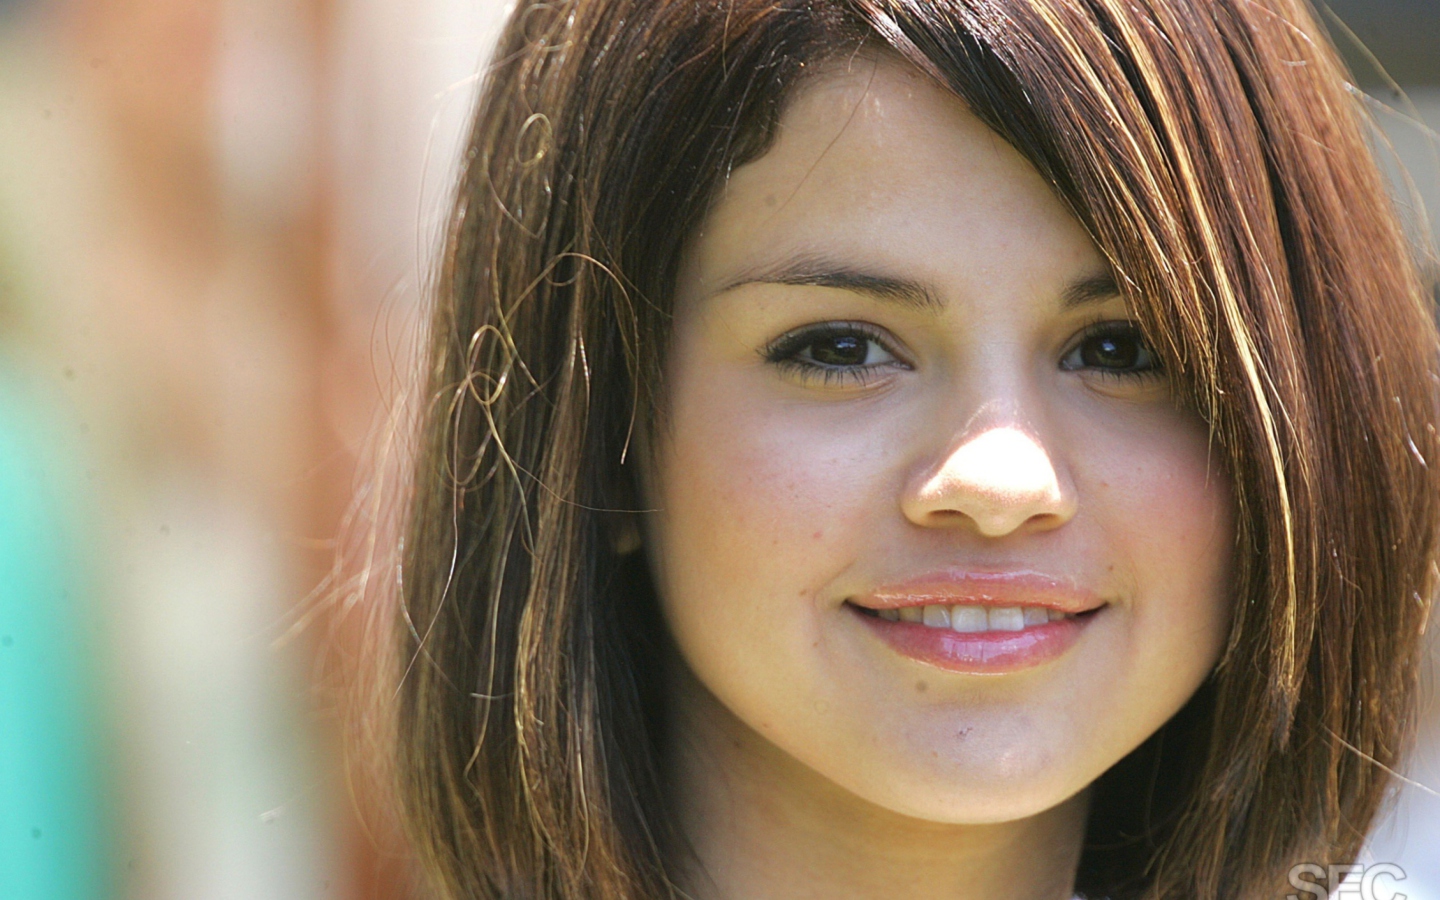 Beautiful Selena Gomez screenshot #1 1440x900